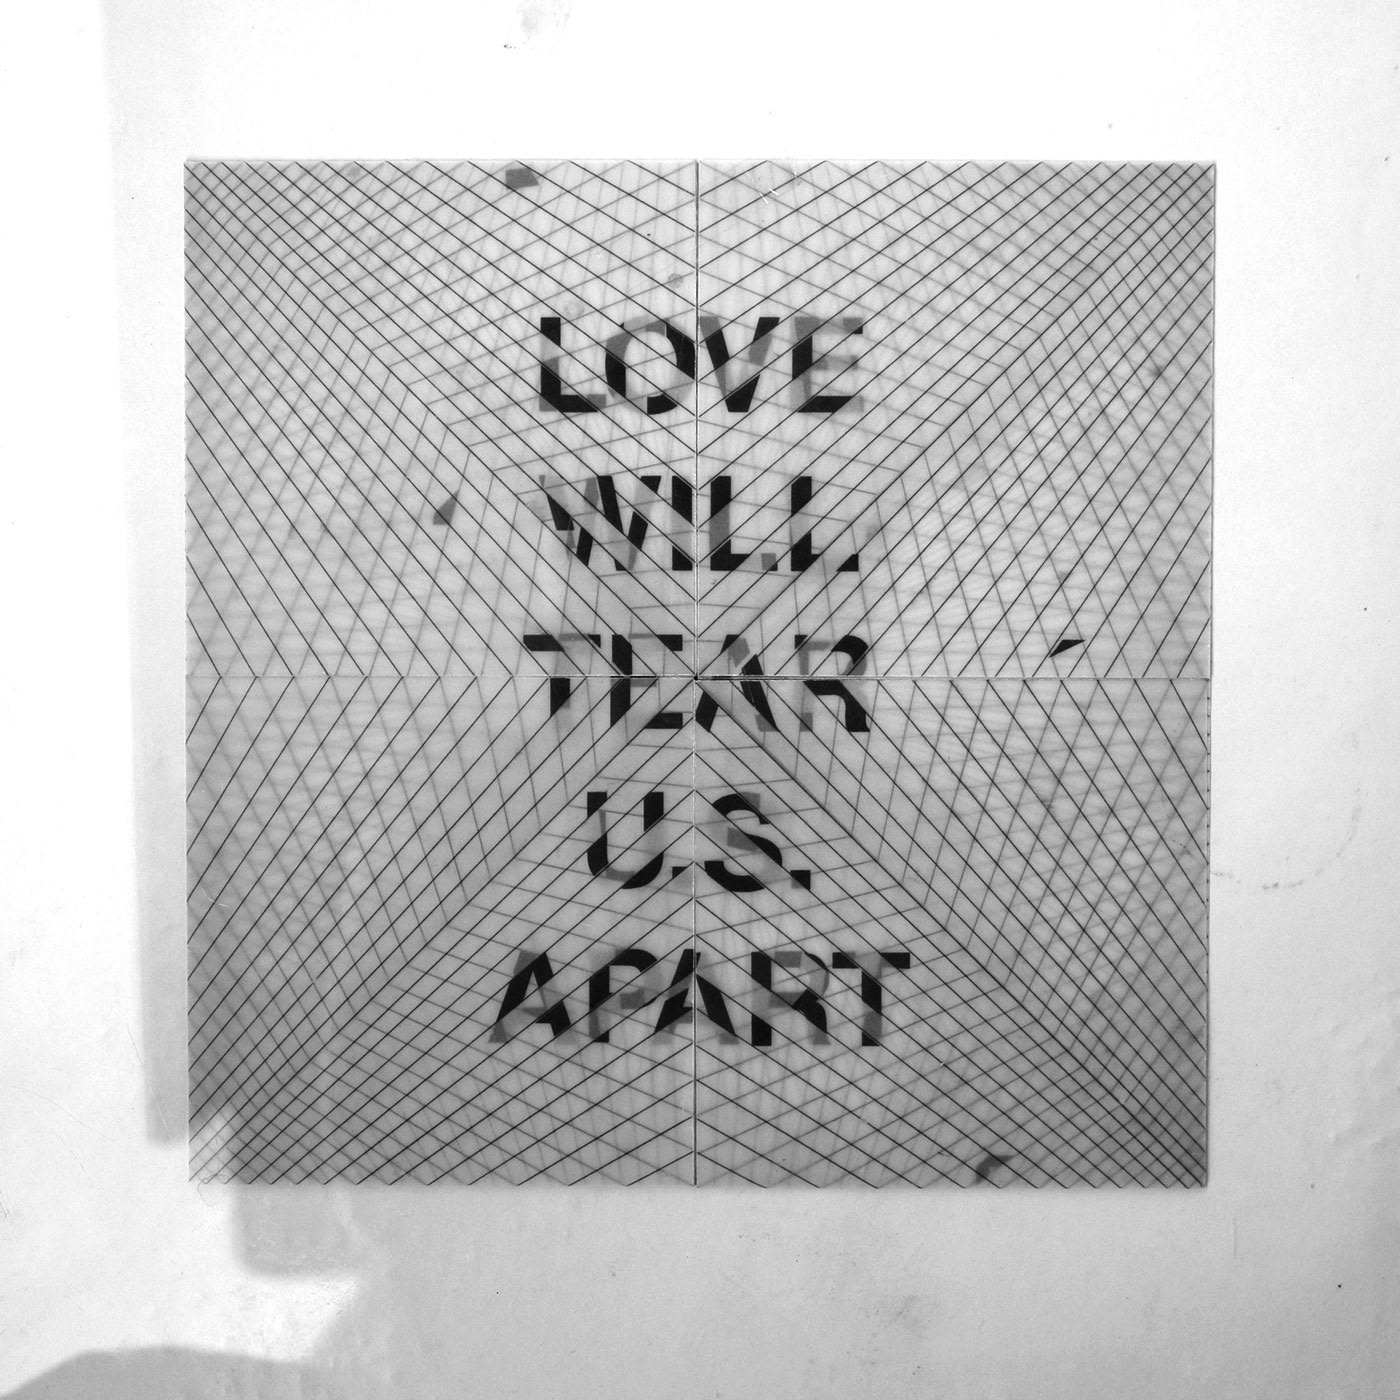 love will tear us apart visualise music